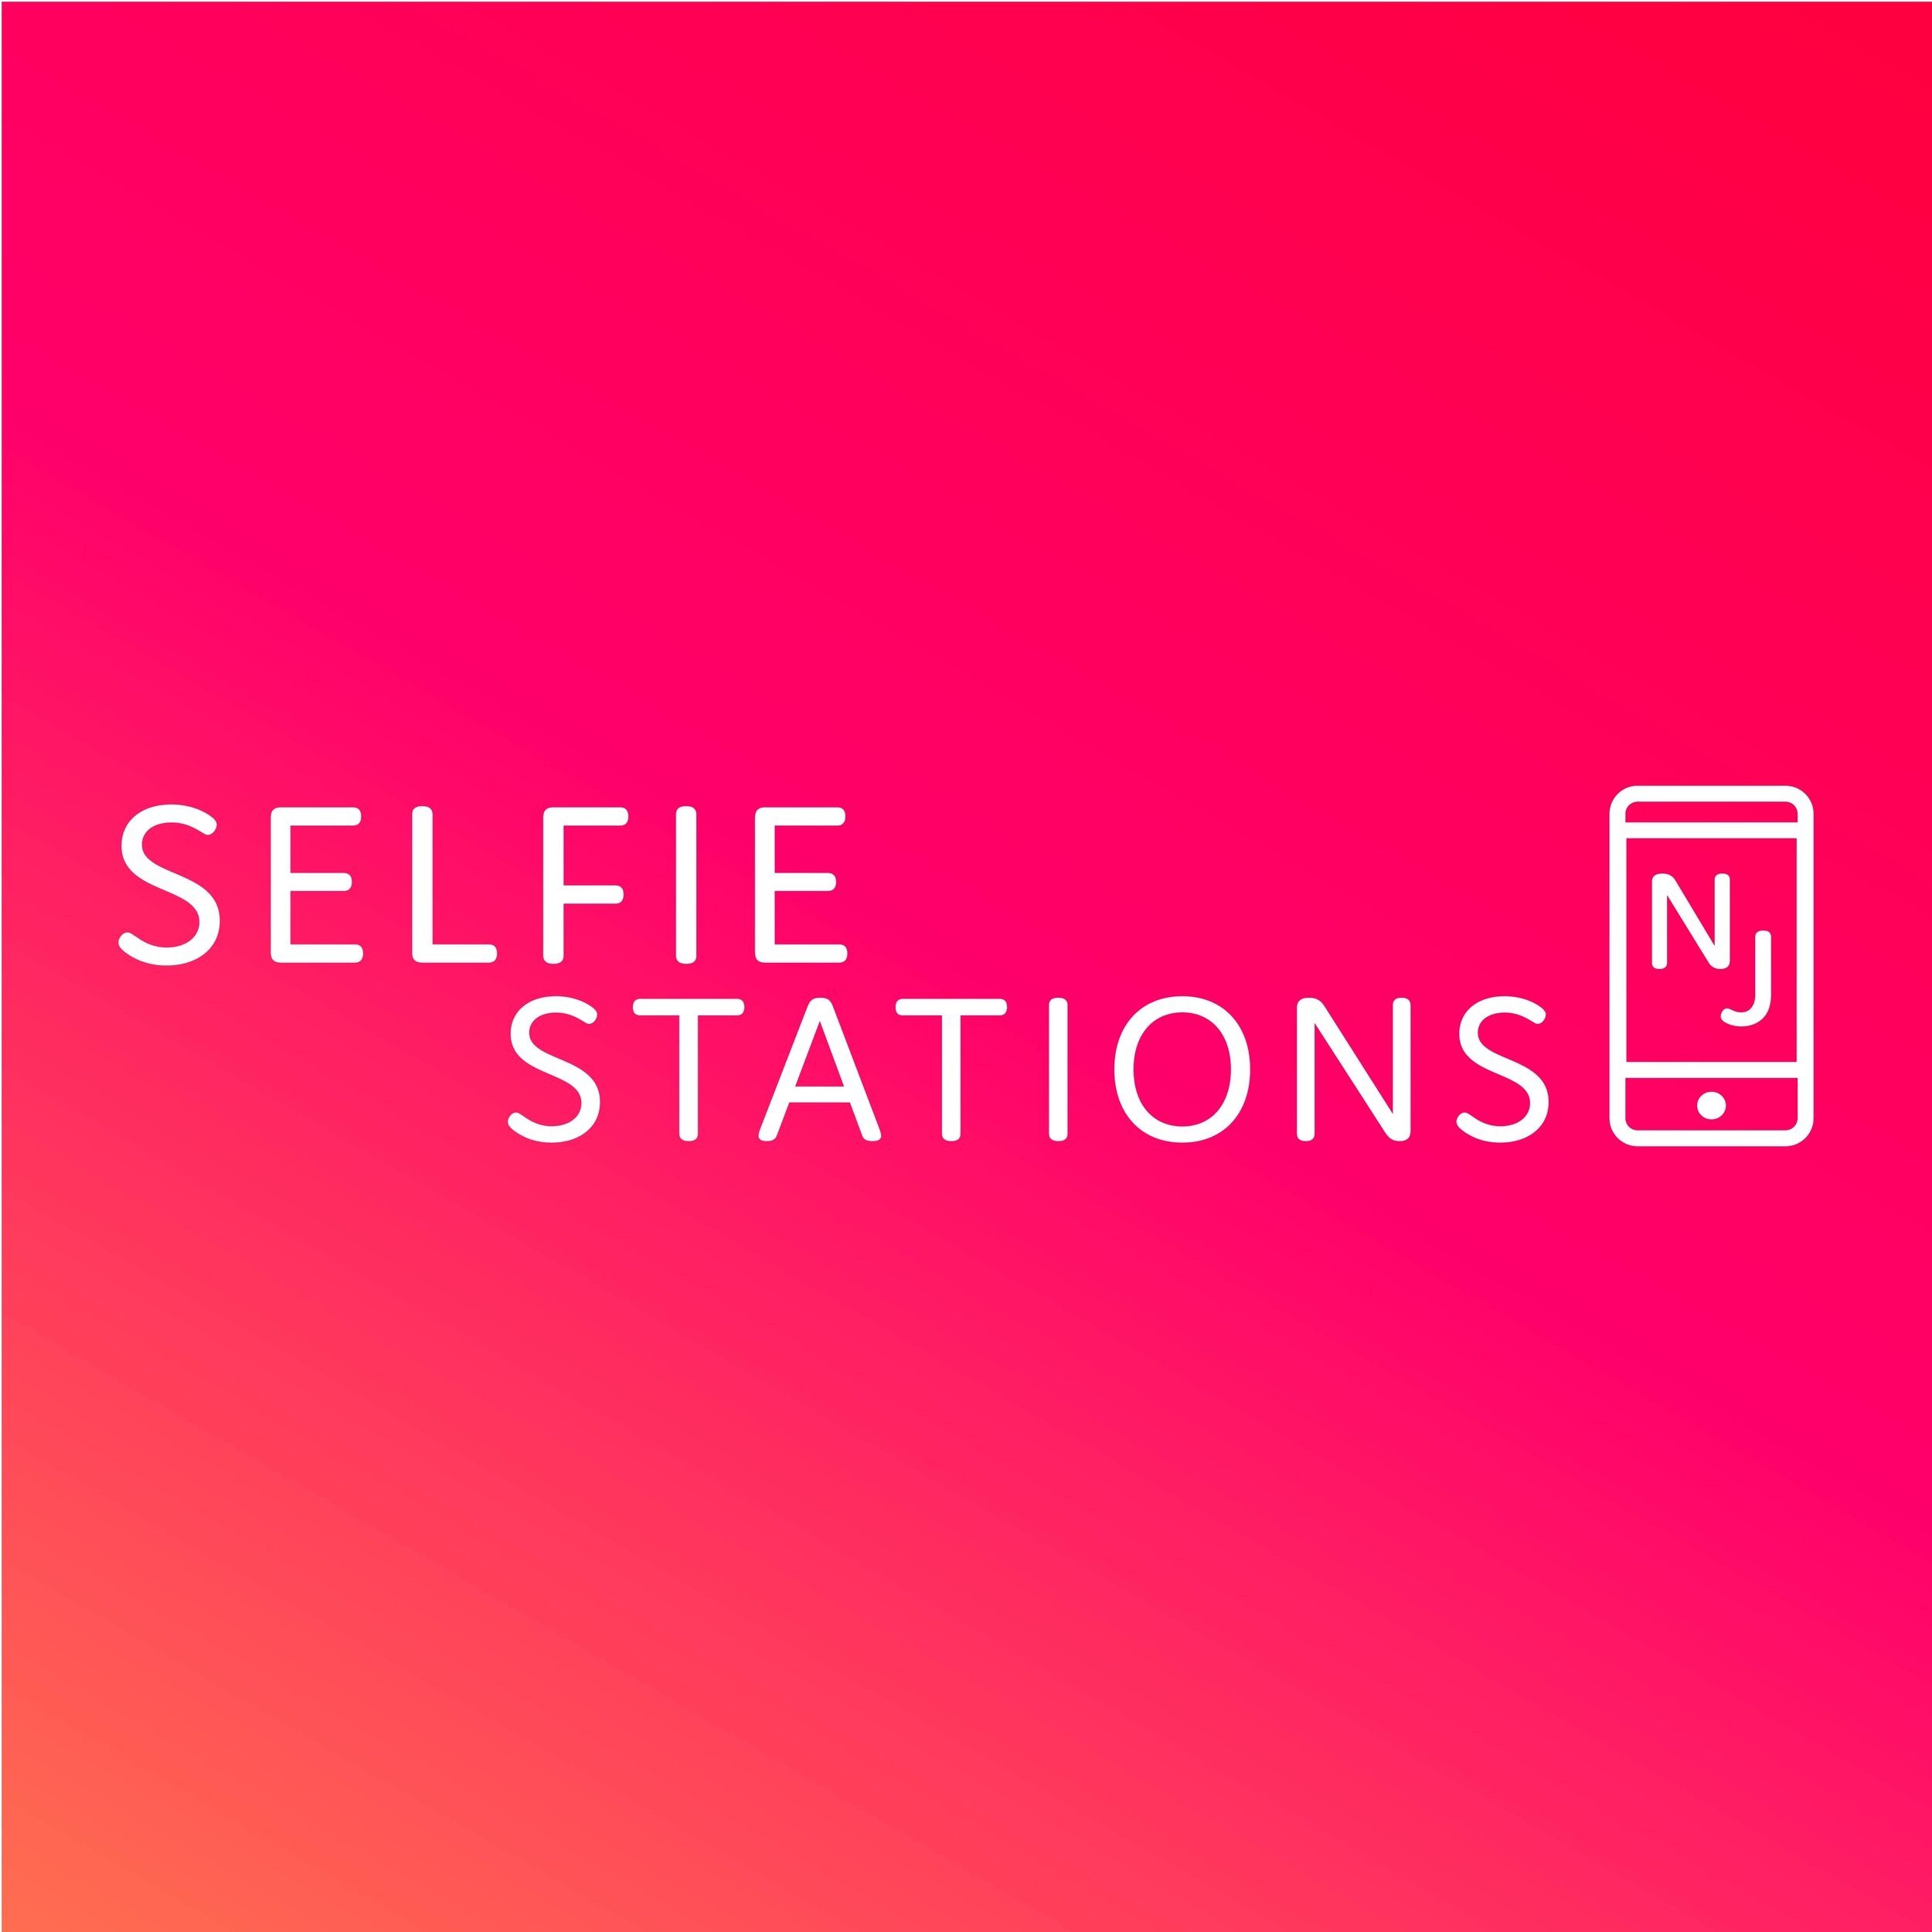 Selfiestations+NJ+-Social-05.jpg